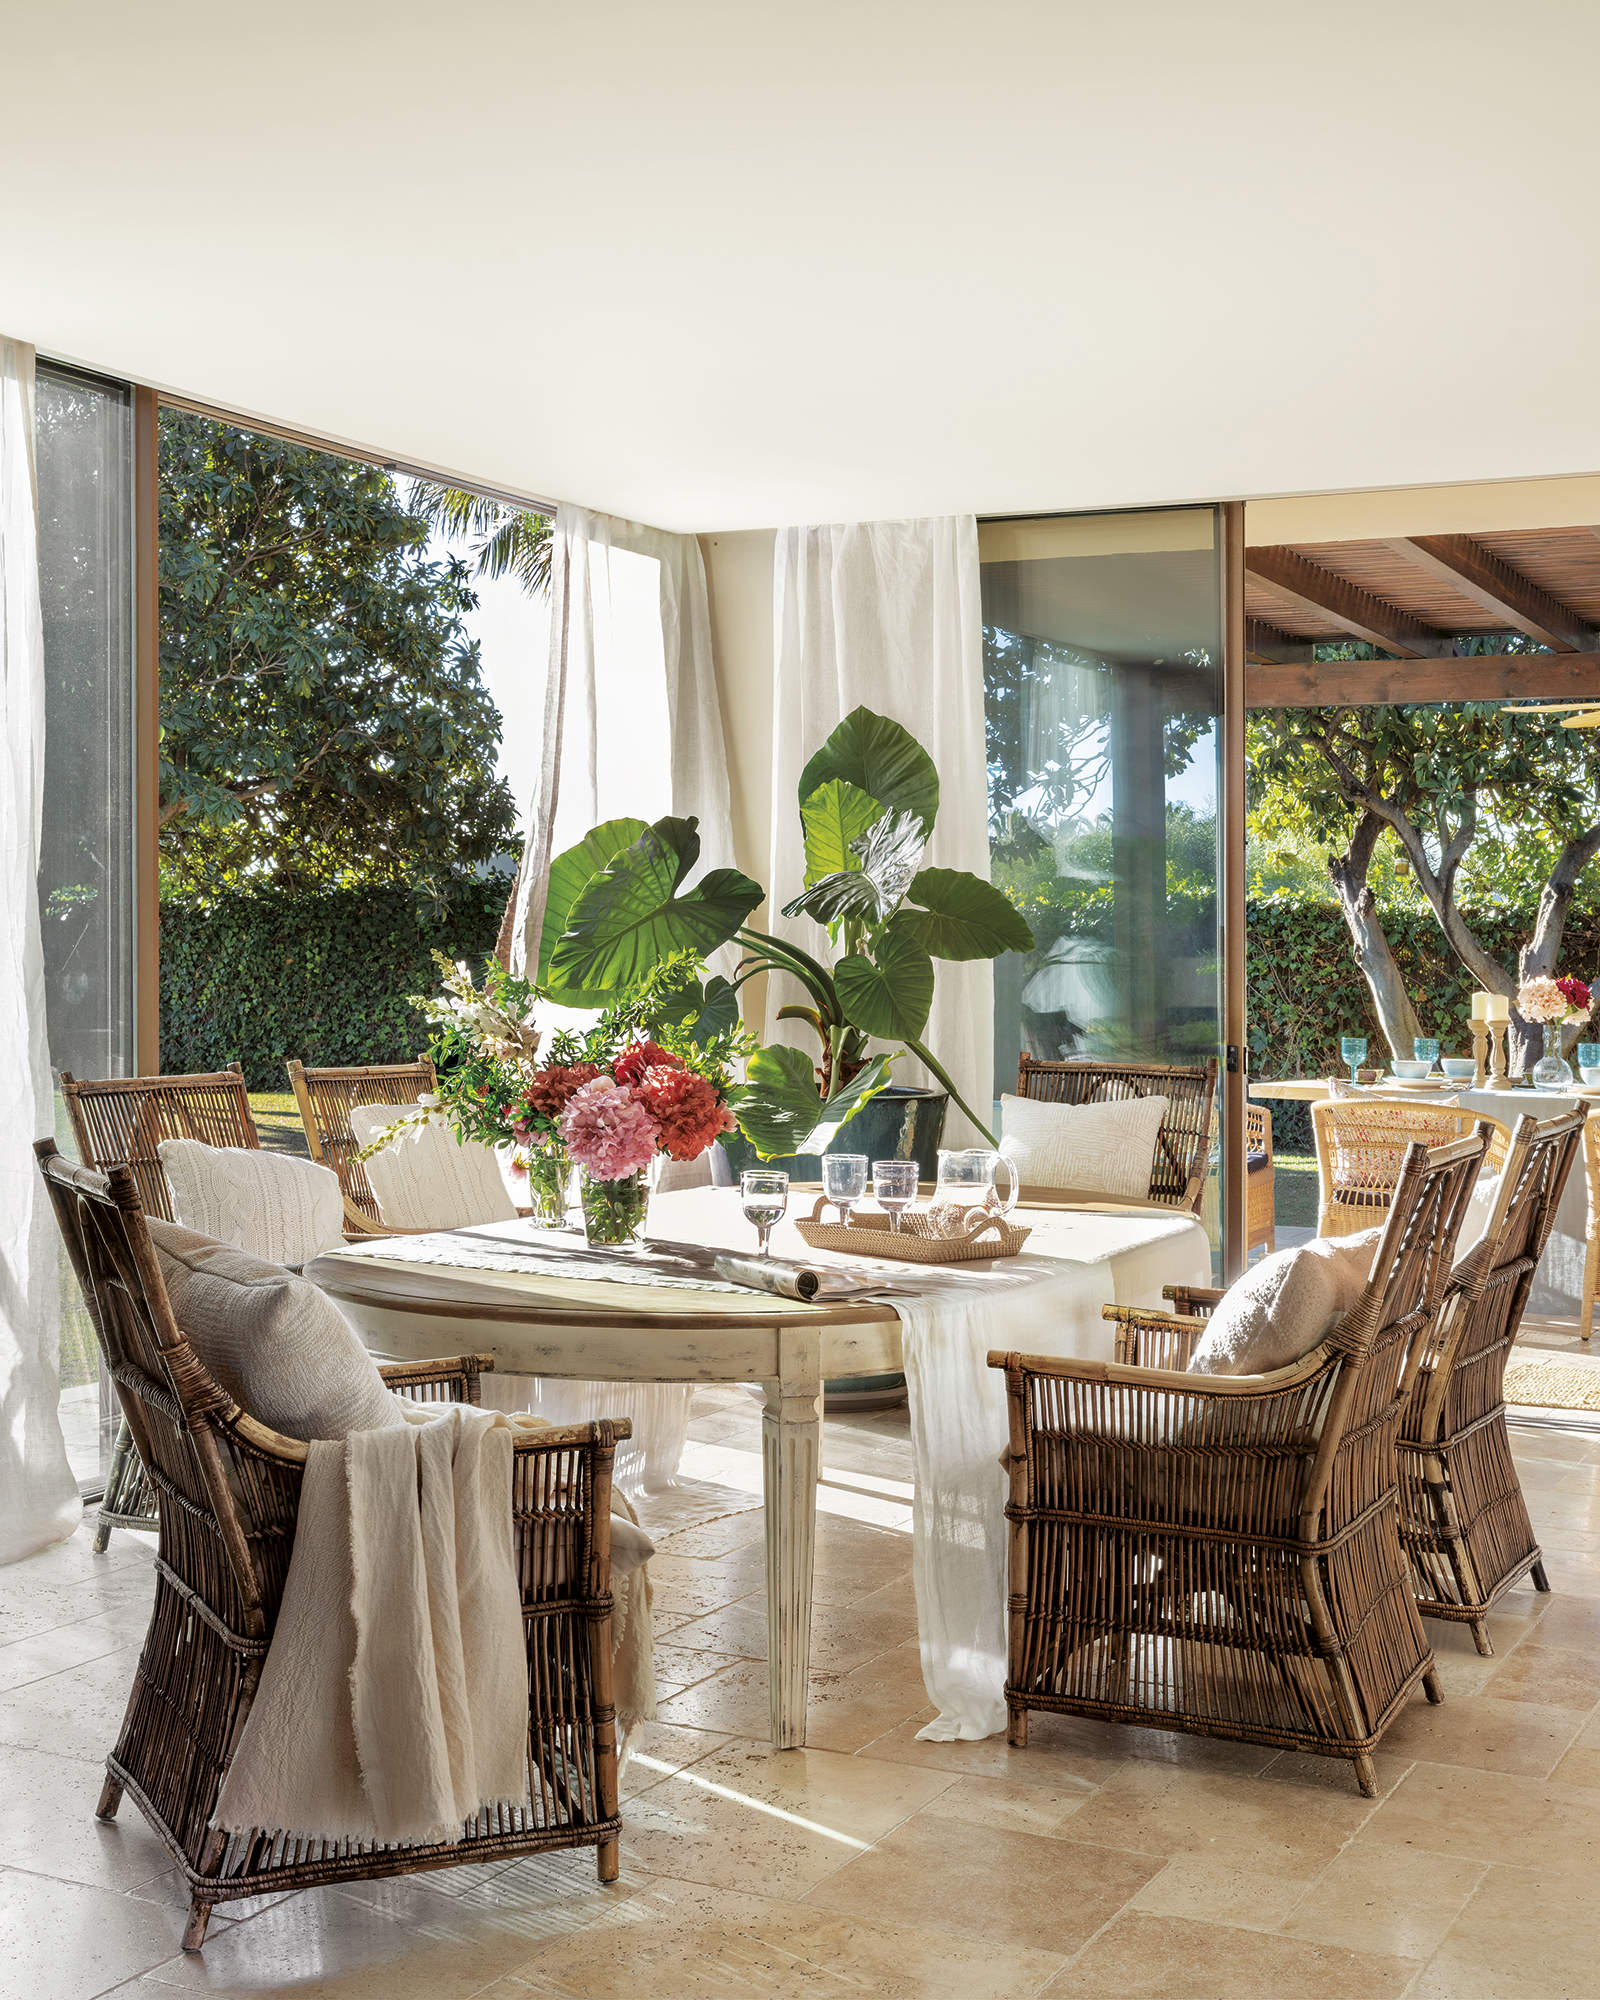 comedor con mesa de madera decapada y sillas de mimbre y bambú, plantas, puerta de cristal con salida al porche, bandeja con copas